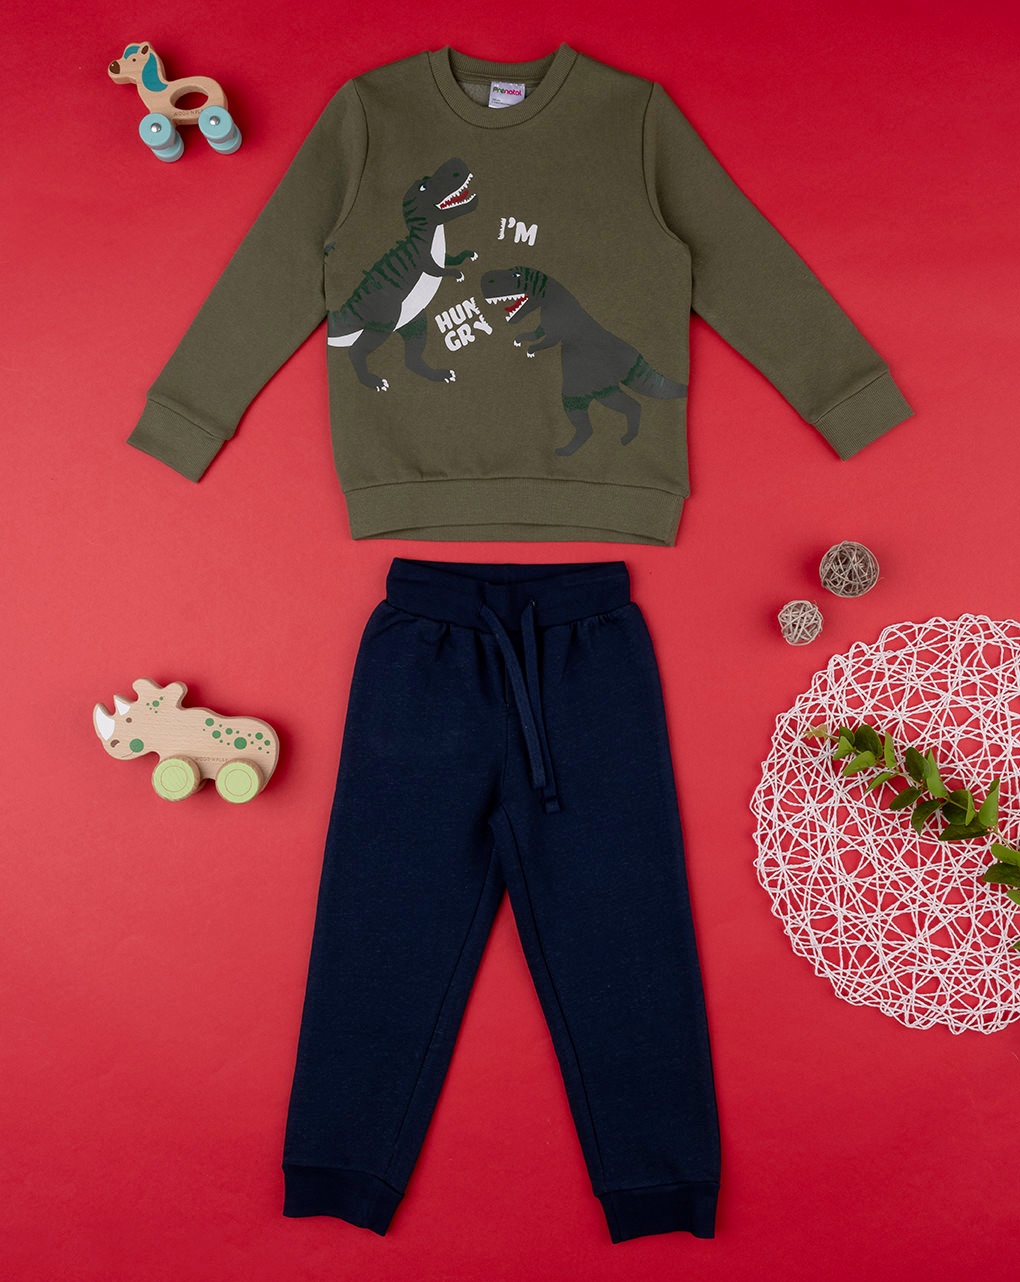 παιδικό σετ μπλούζα φούτερ και φόρμα με δεινόσαυρους για αγόρι